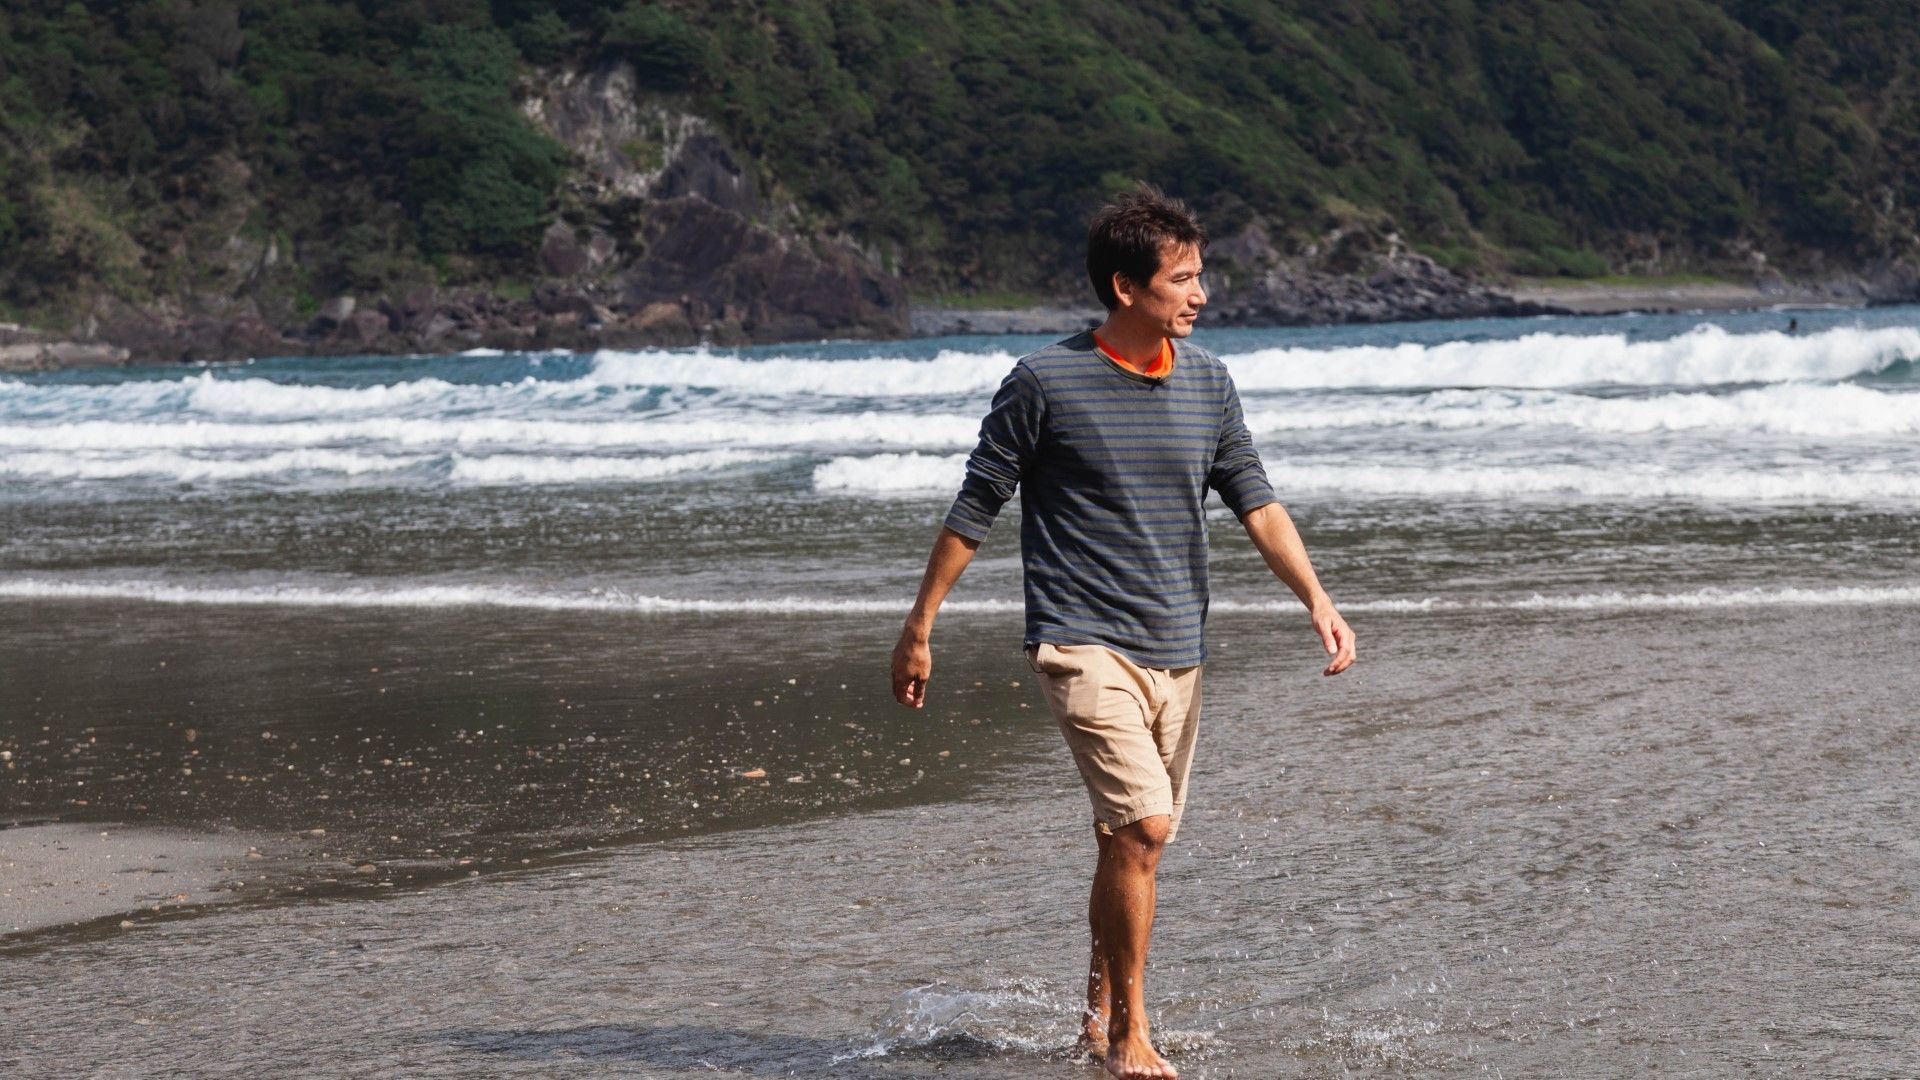 奄美過疎地に住む仏男性が日本人に伝えたい危機 きれいな海と住民の暮らしをめぐる複雑な事情 | 街･住まい | 東洋経済オンライン